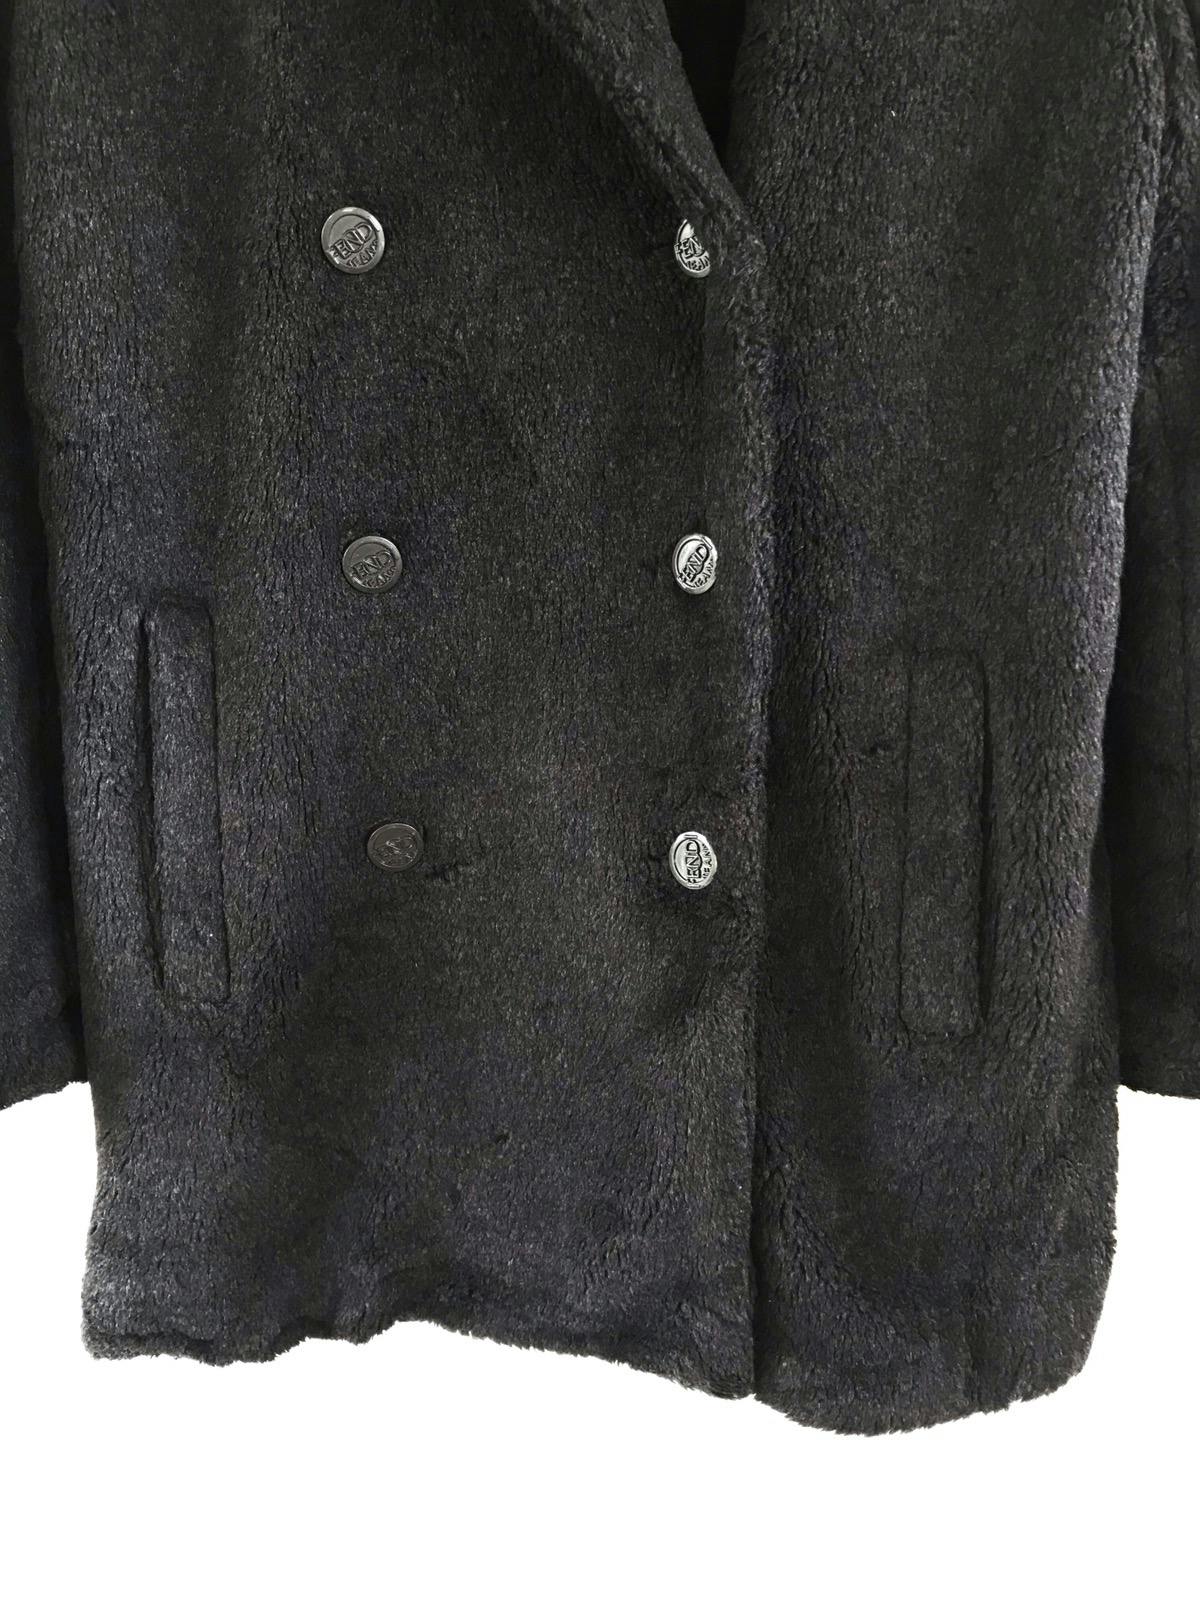 FENDI Jeans Boa Coat/ Fur Jacket Made in Italy - 6